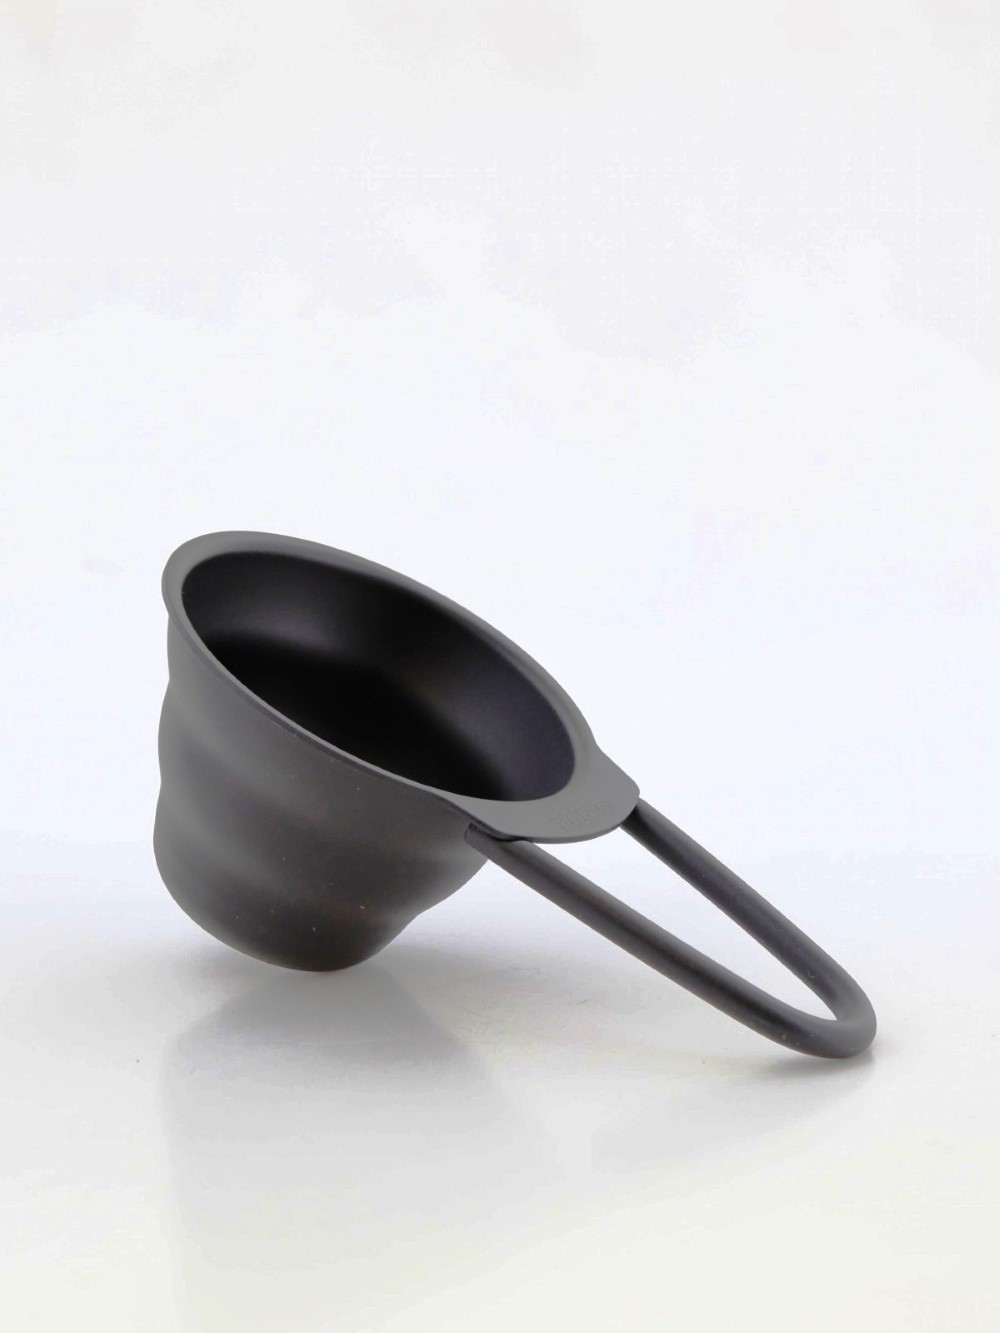 Hario Coffee Measuring Spoon Black